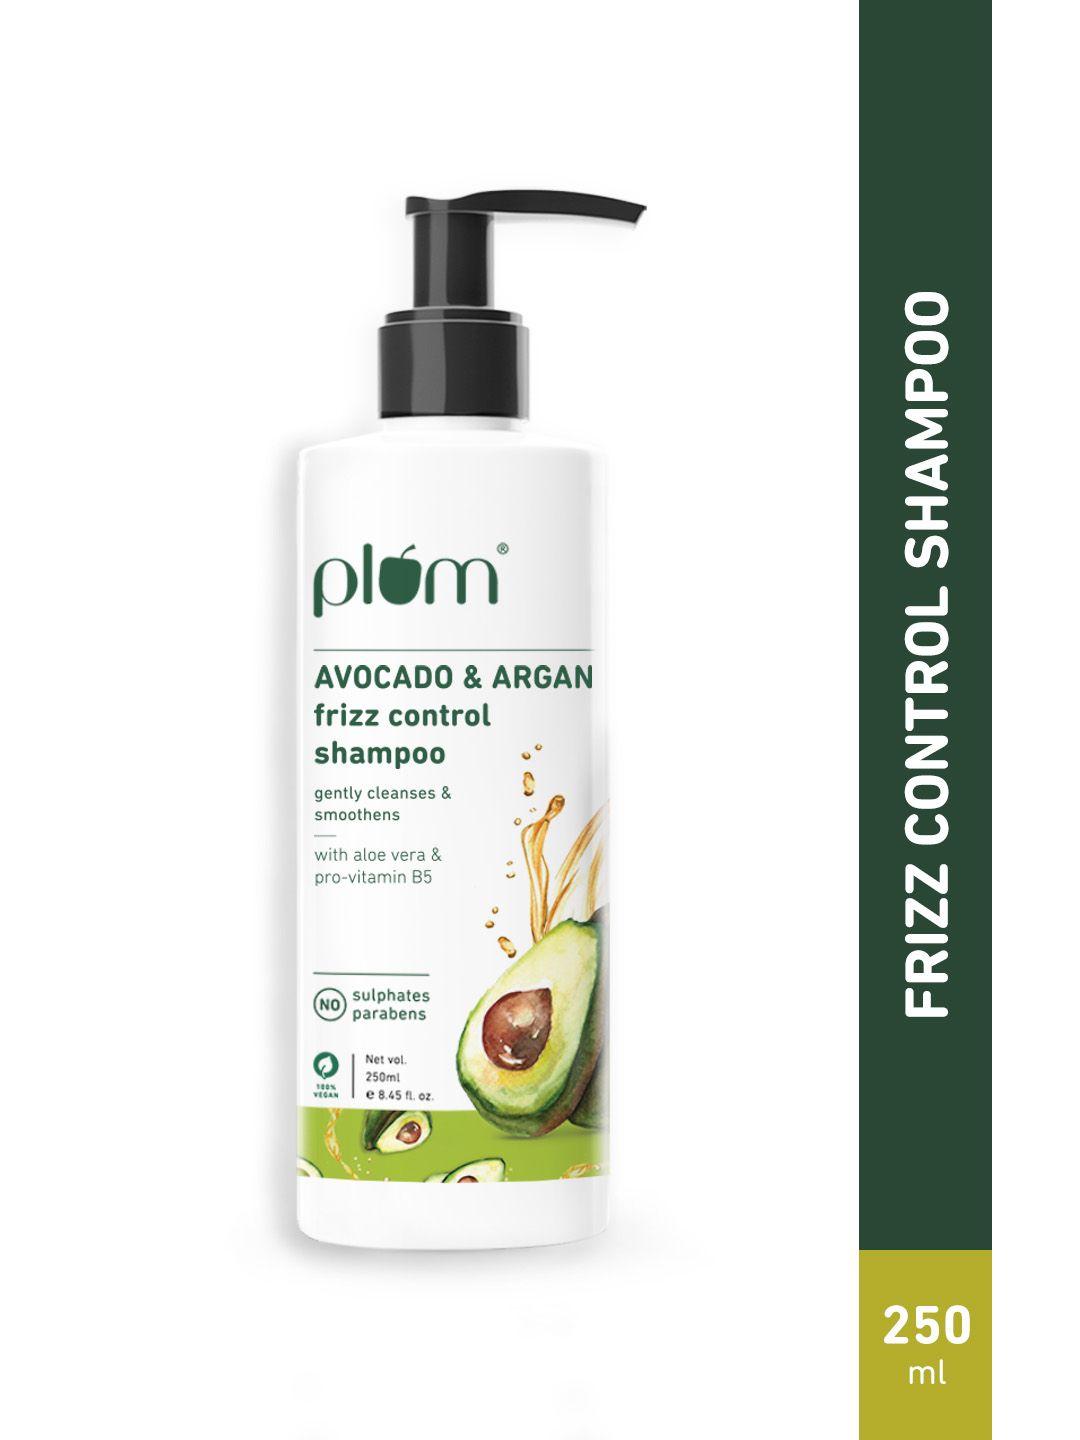 plum avocado & argan frizz control shampoo